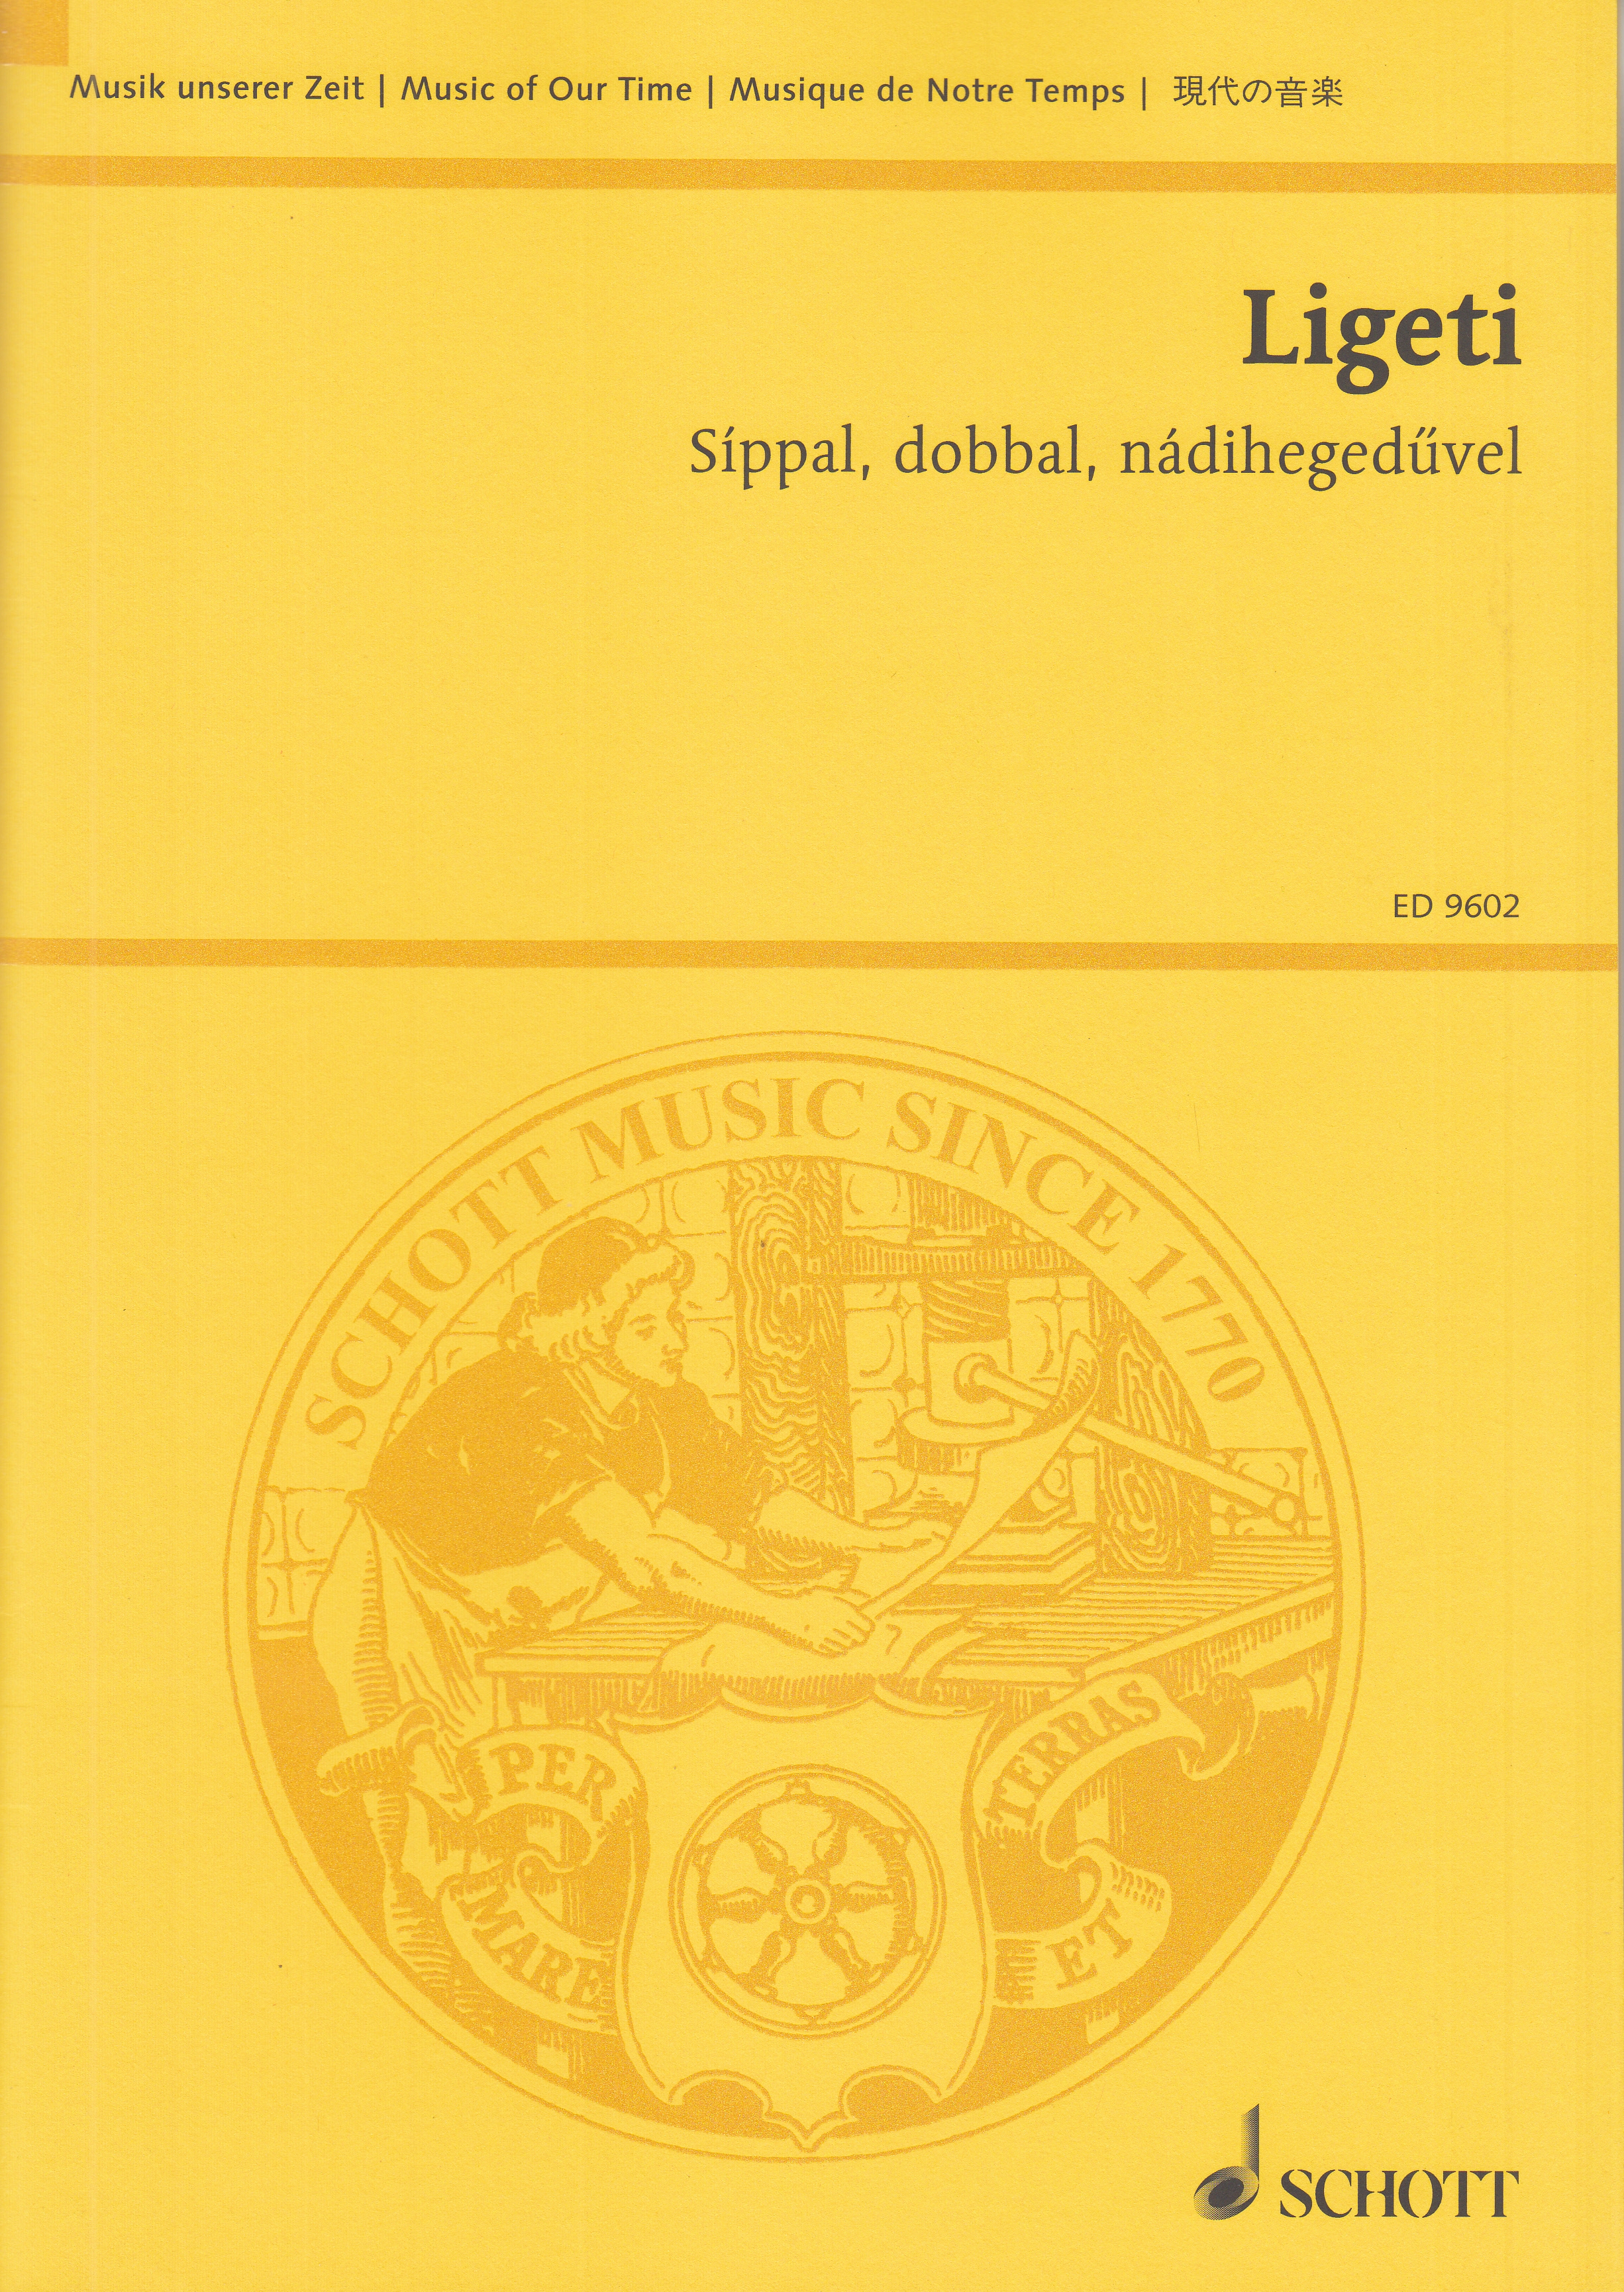 Síppal, dobbal, nádihegedüvel, (With Pipes, Drums, Fiddles), mezzo soprano and 4 percussionists, study score